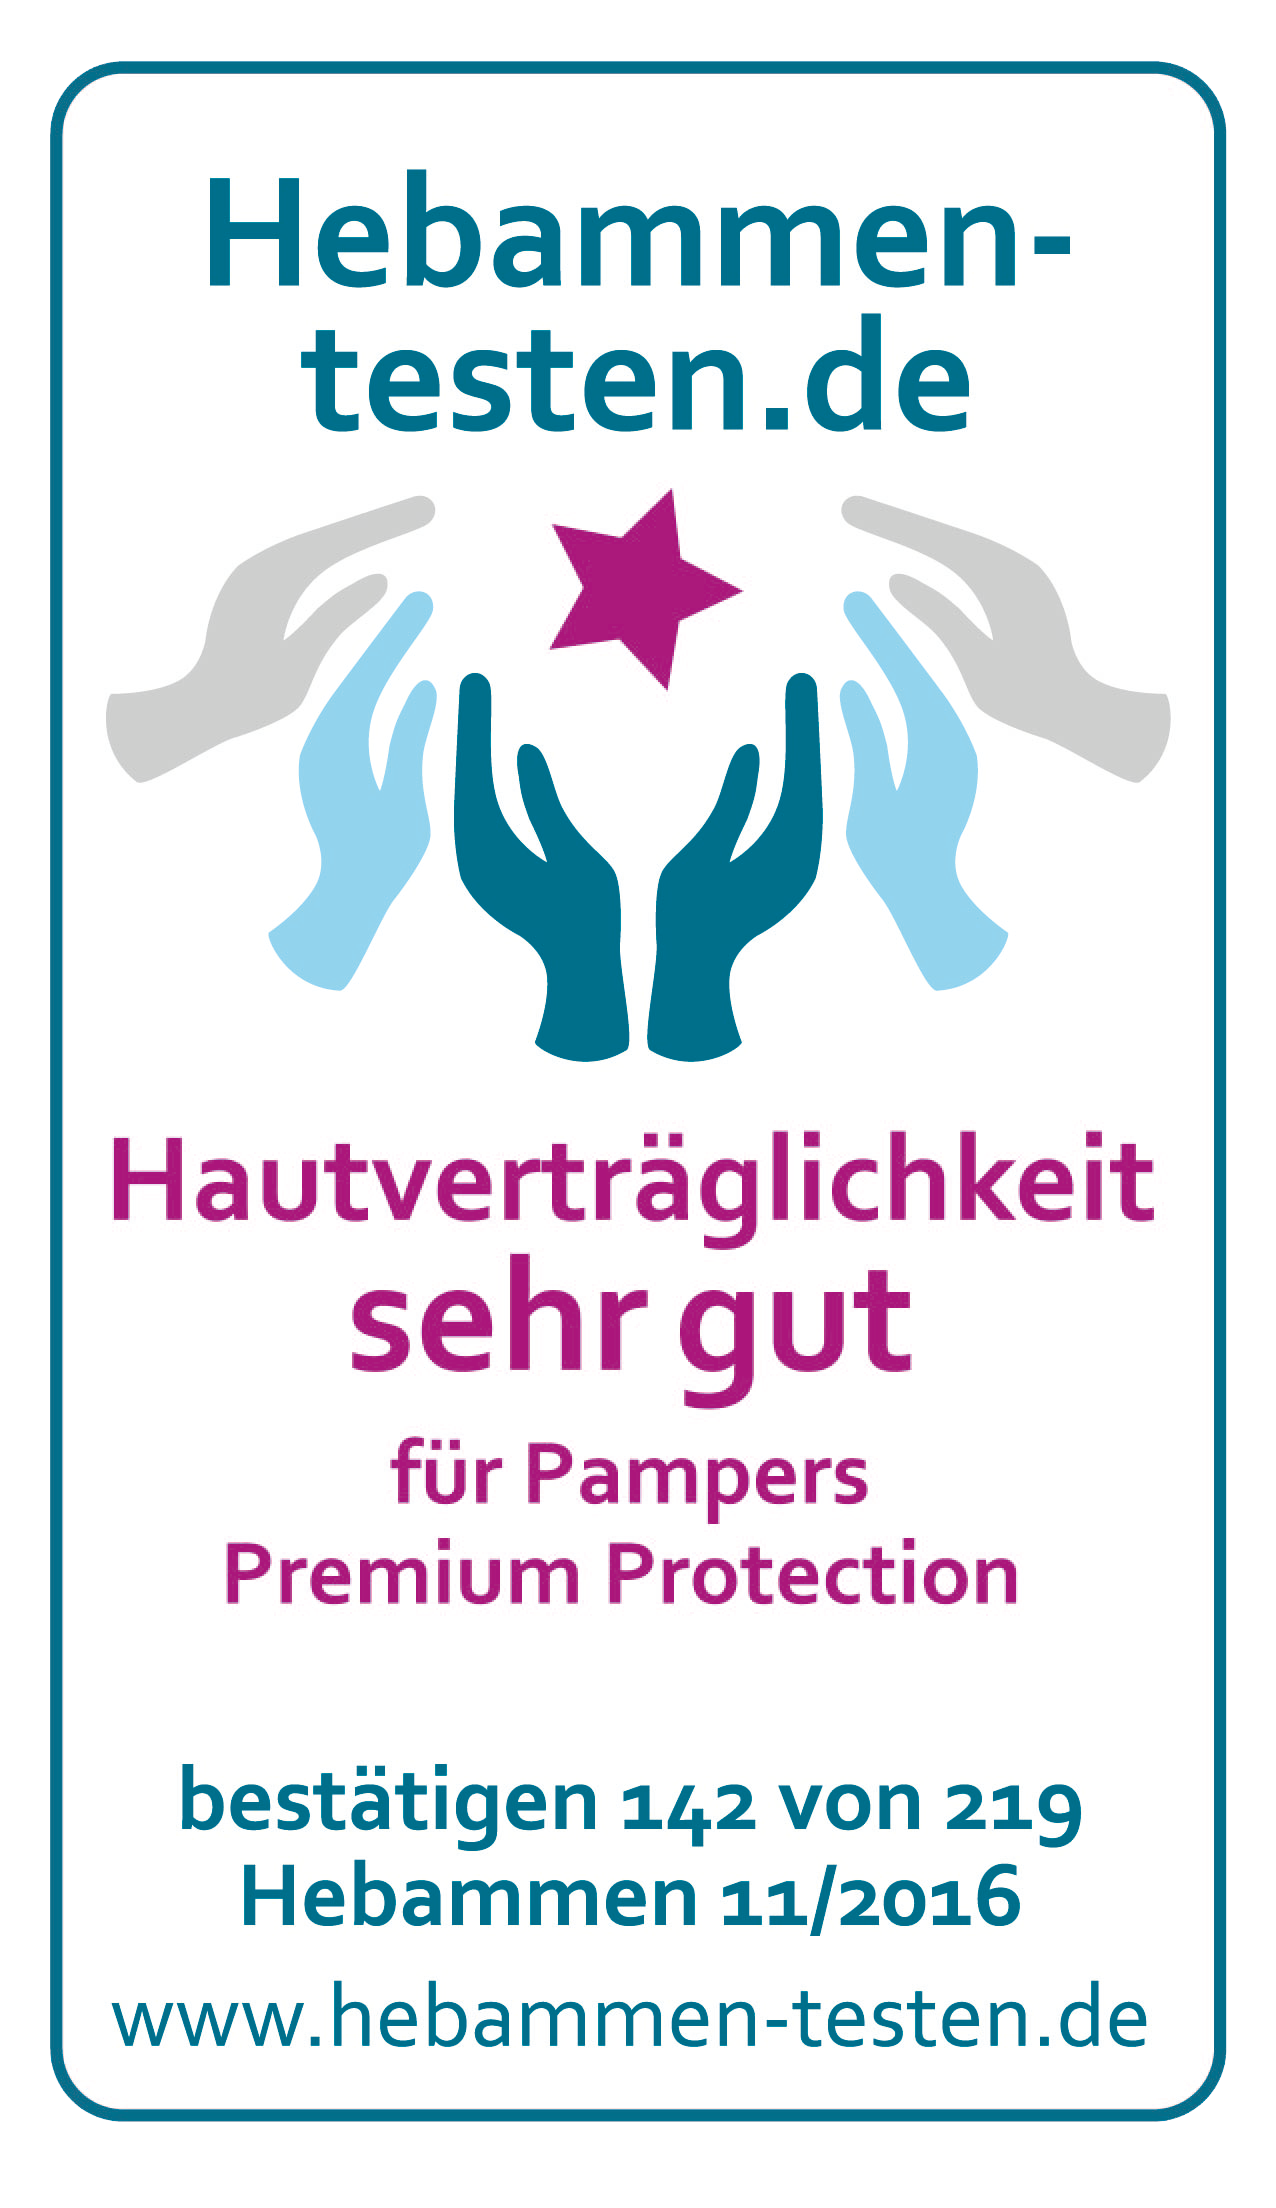 Hebamment-testen.de Siegel für Pampers Premium Protection Hautverträglichkeit sehr gut bestätigen 142 von 219 Hebammen in einem Test vom November 2016.